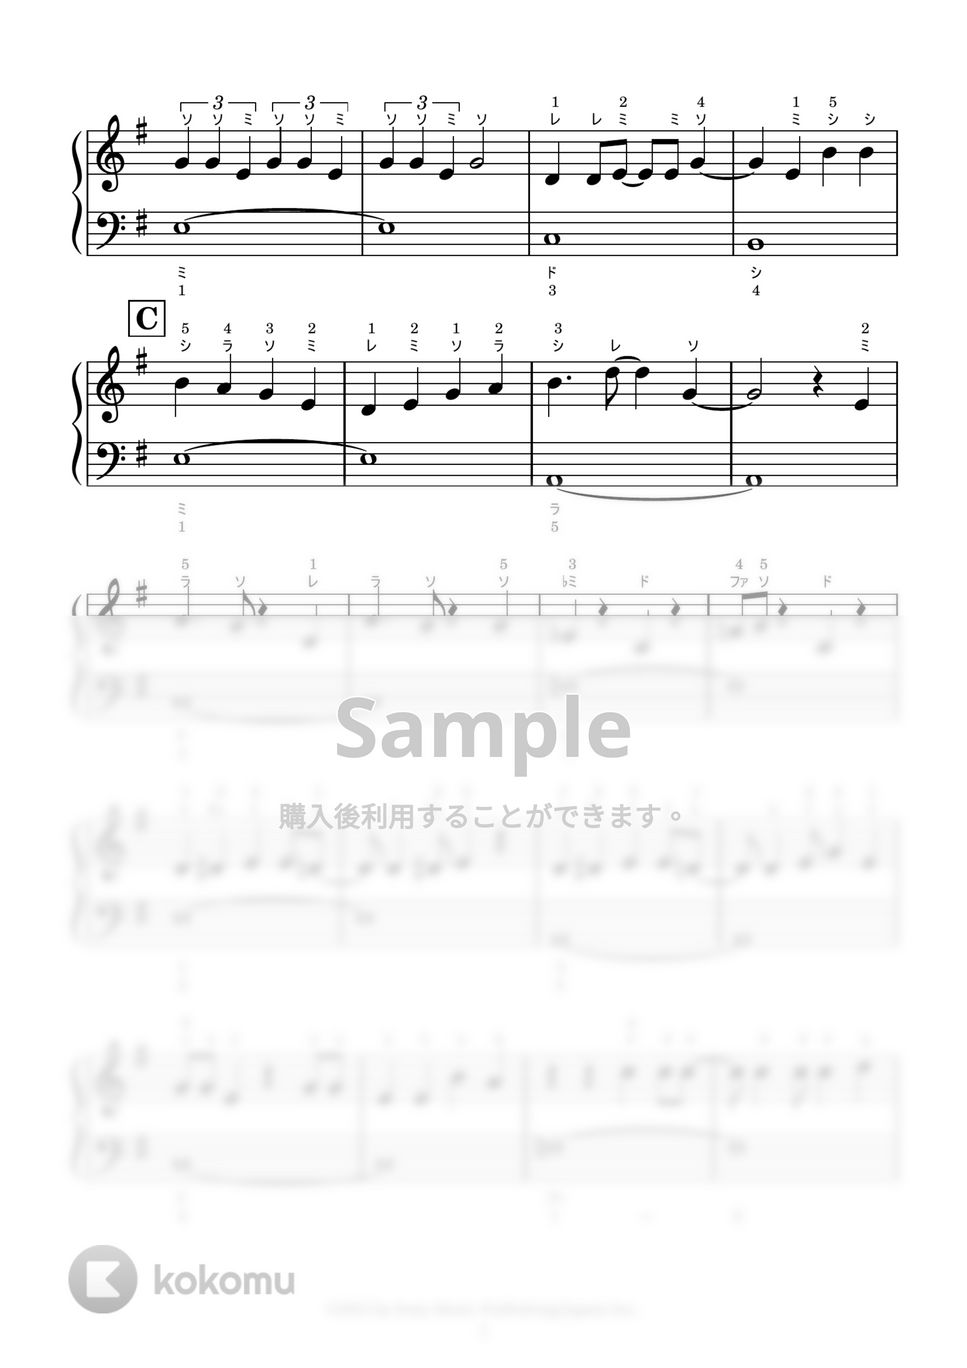 NiziU - COCONUT (ドレミふりがな・指使い付き) by かんたんピアノ ♪ 1 Finger K-POPiano